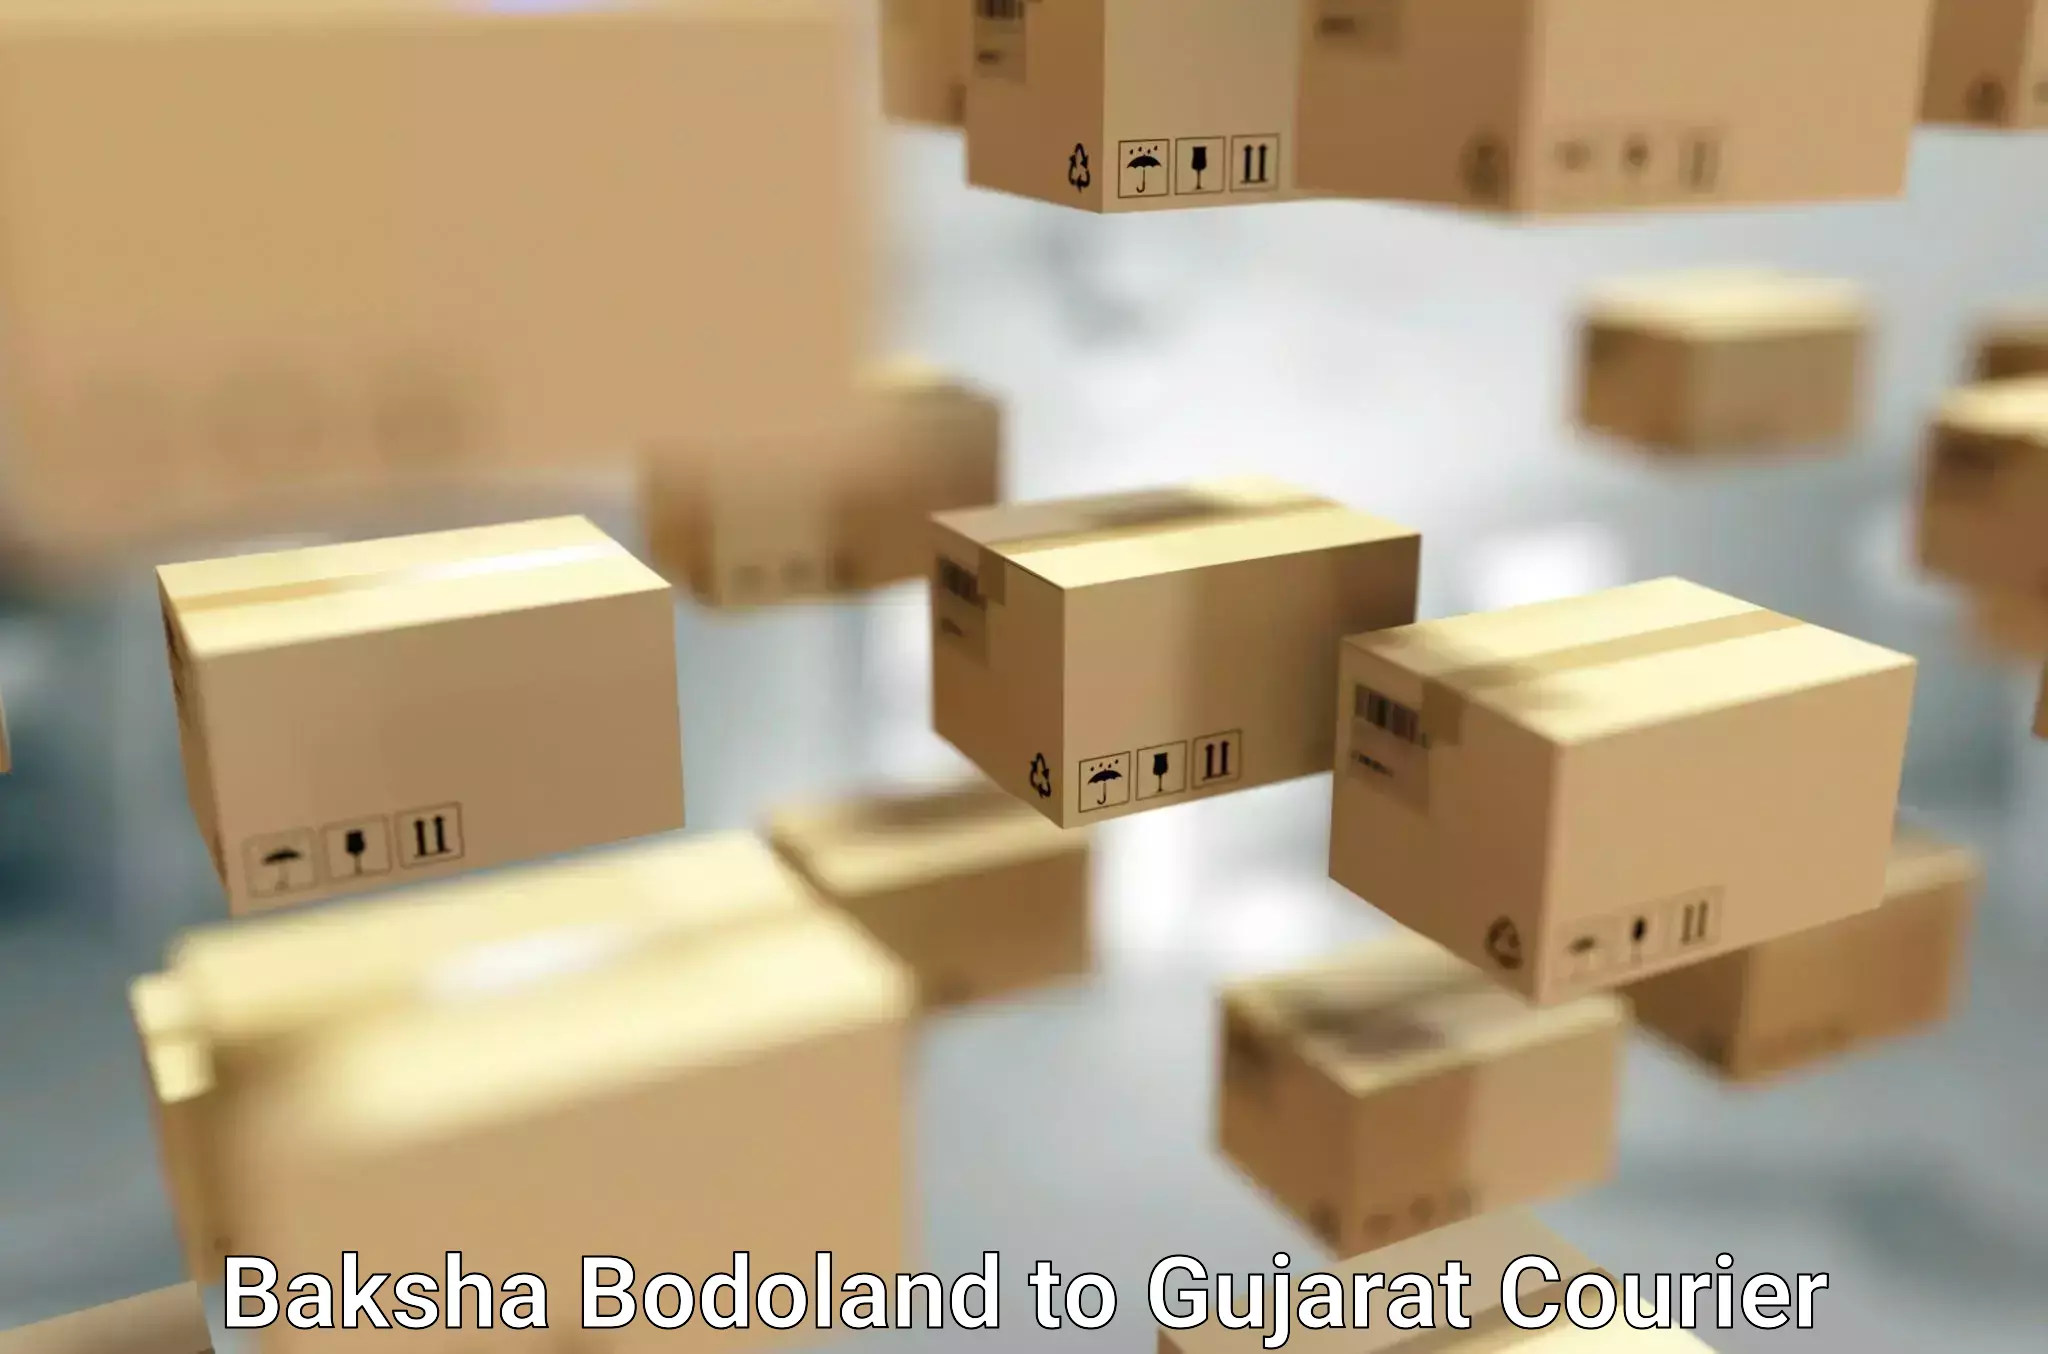 Furniture moving specialists Baksha Bodoland to Gujarat